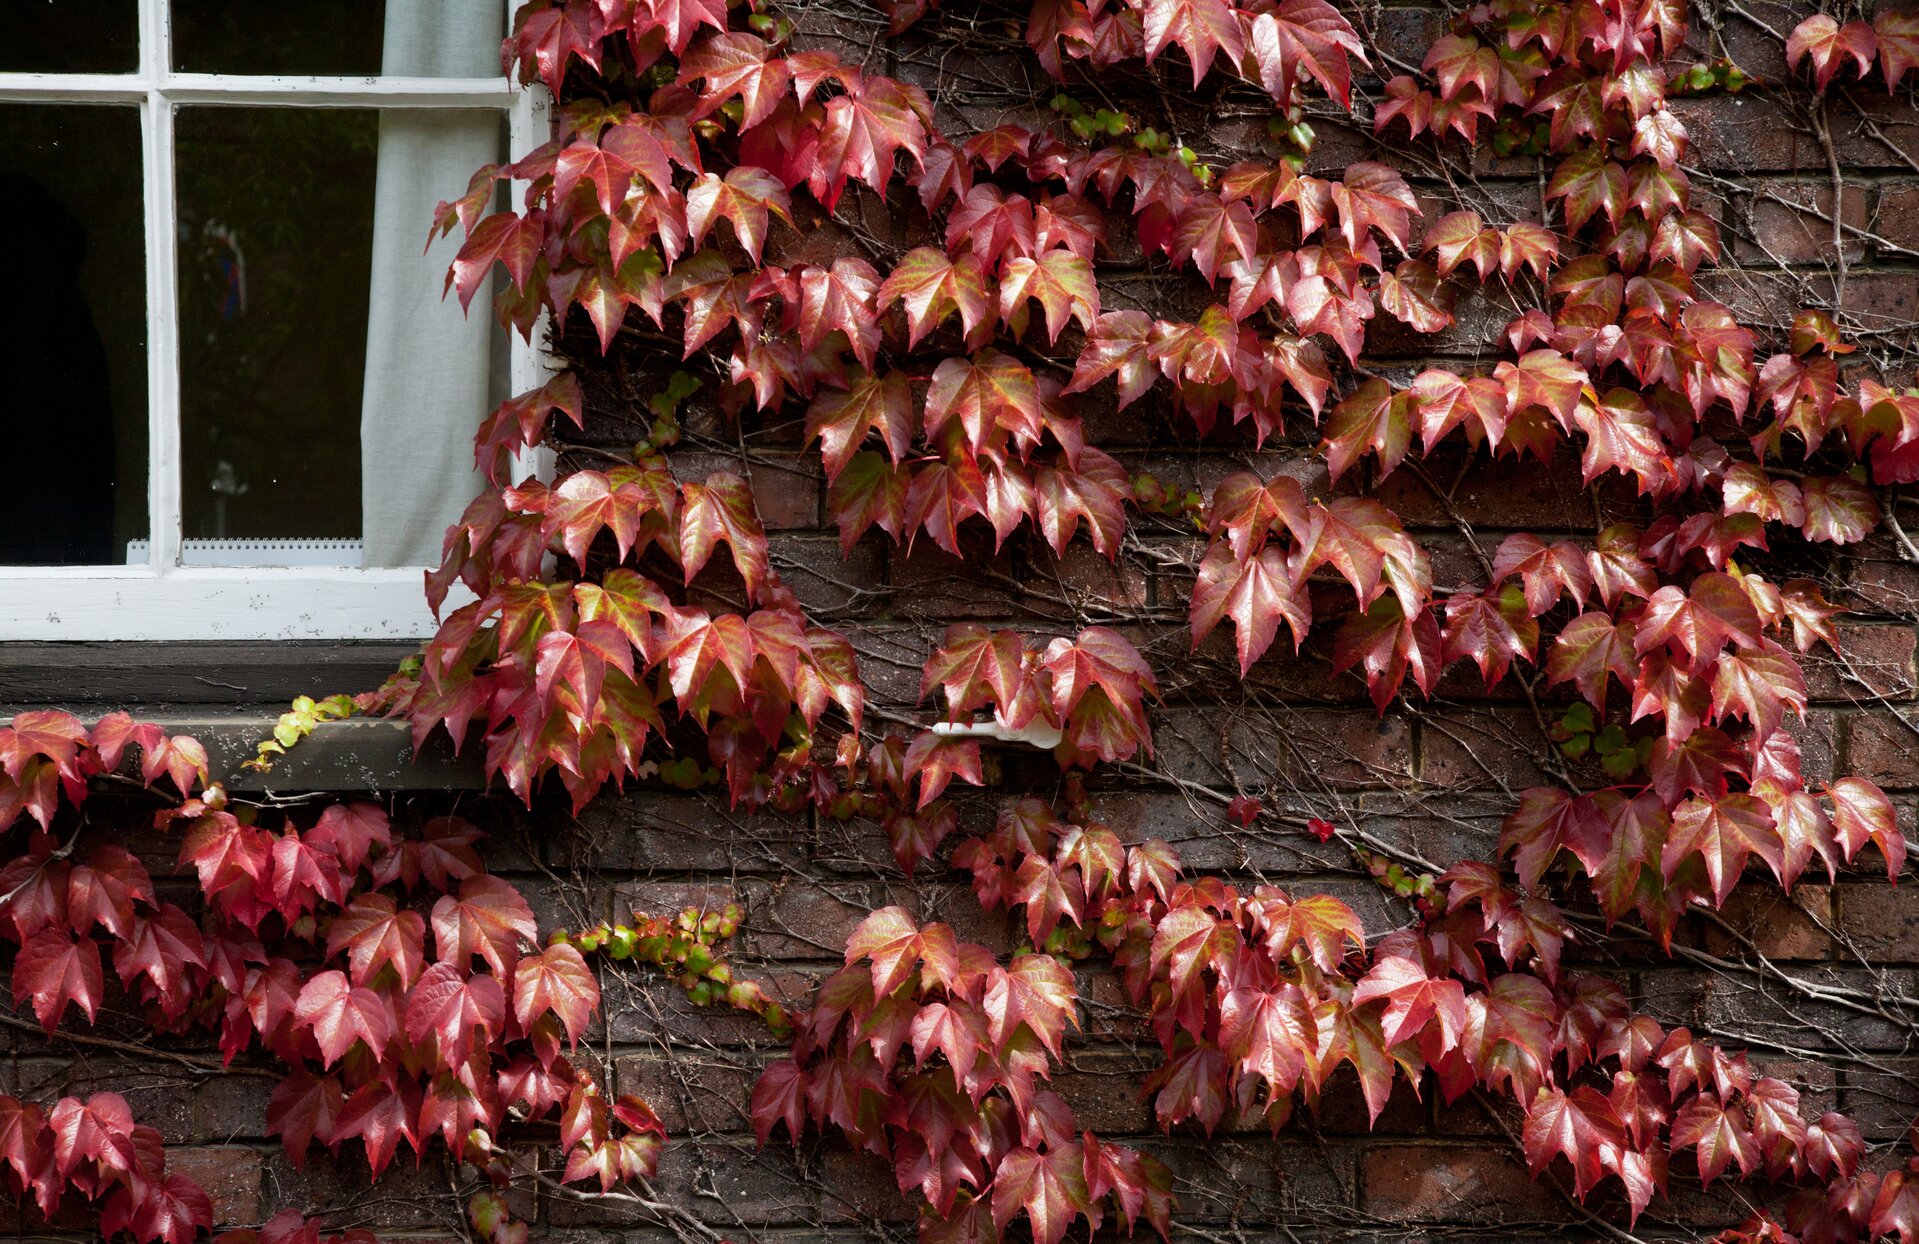 Fotografia przedstawia ścianę budynku, po której wspina się roślina o czerwonych, klapowanych liściach. To winobluszcz. Jego szare łodygi są ściśle przyczepione do ściany.